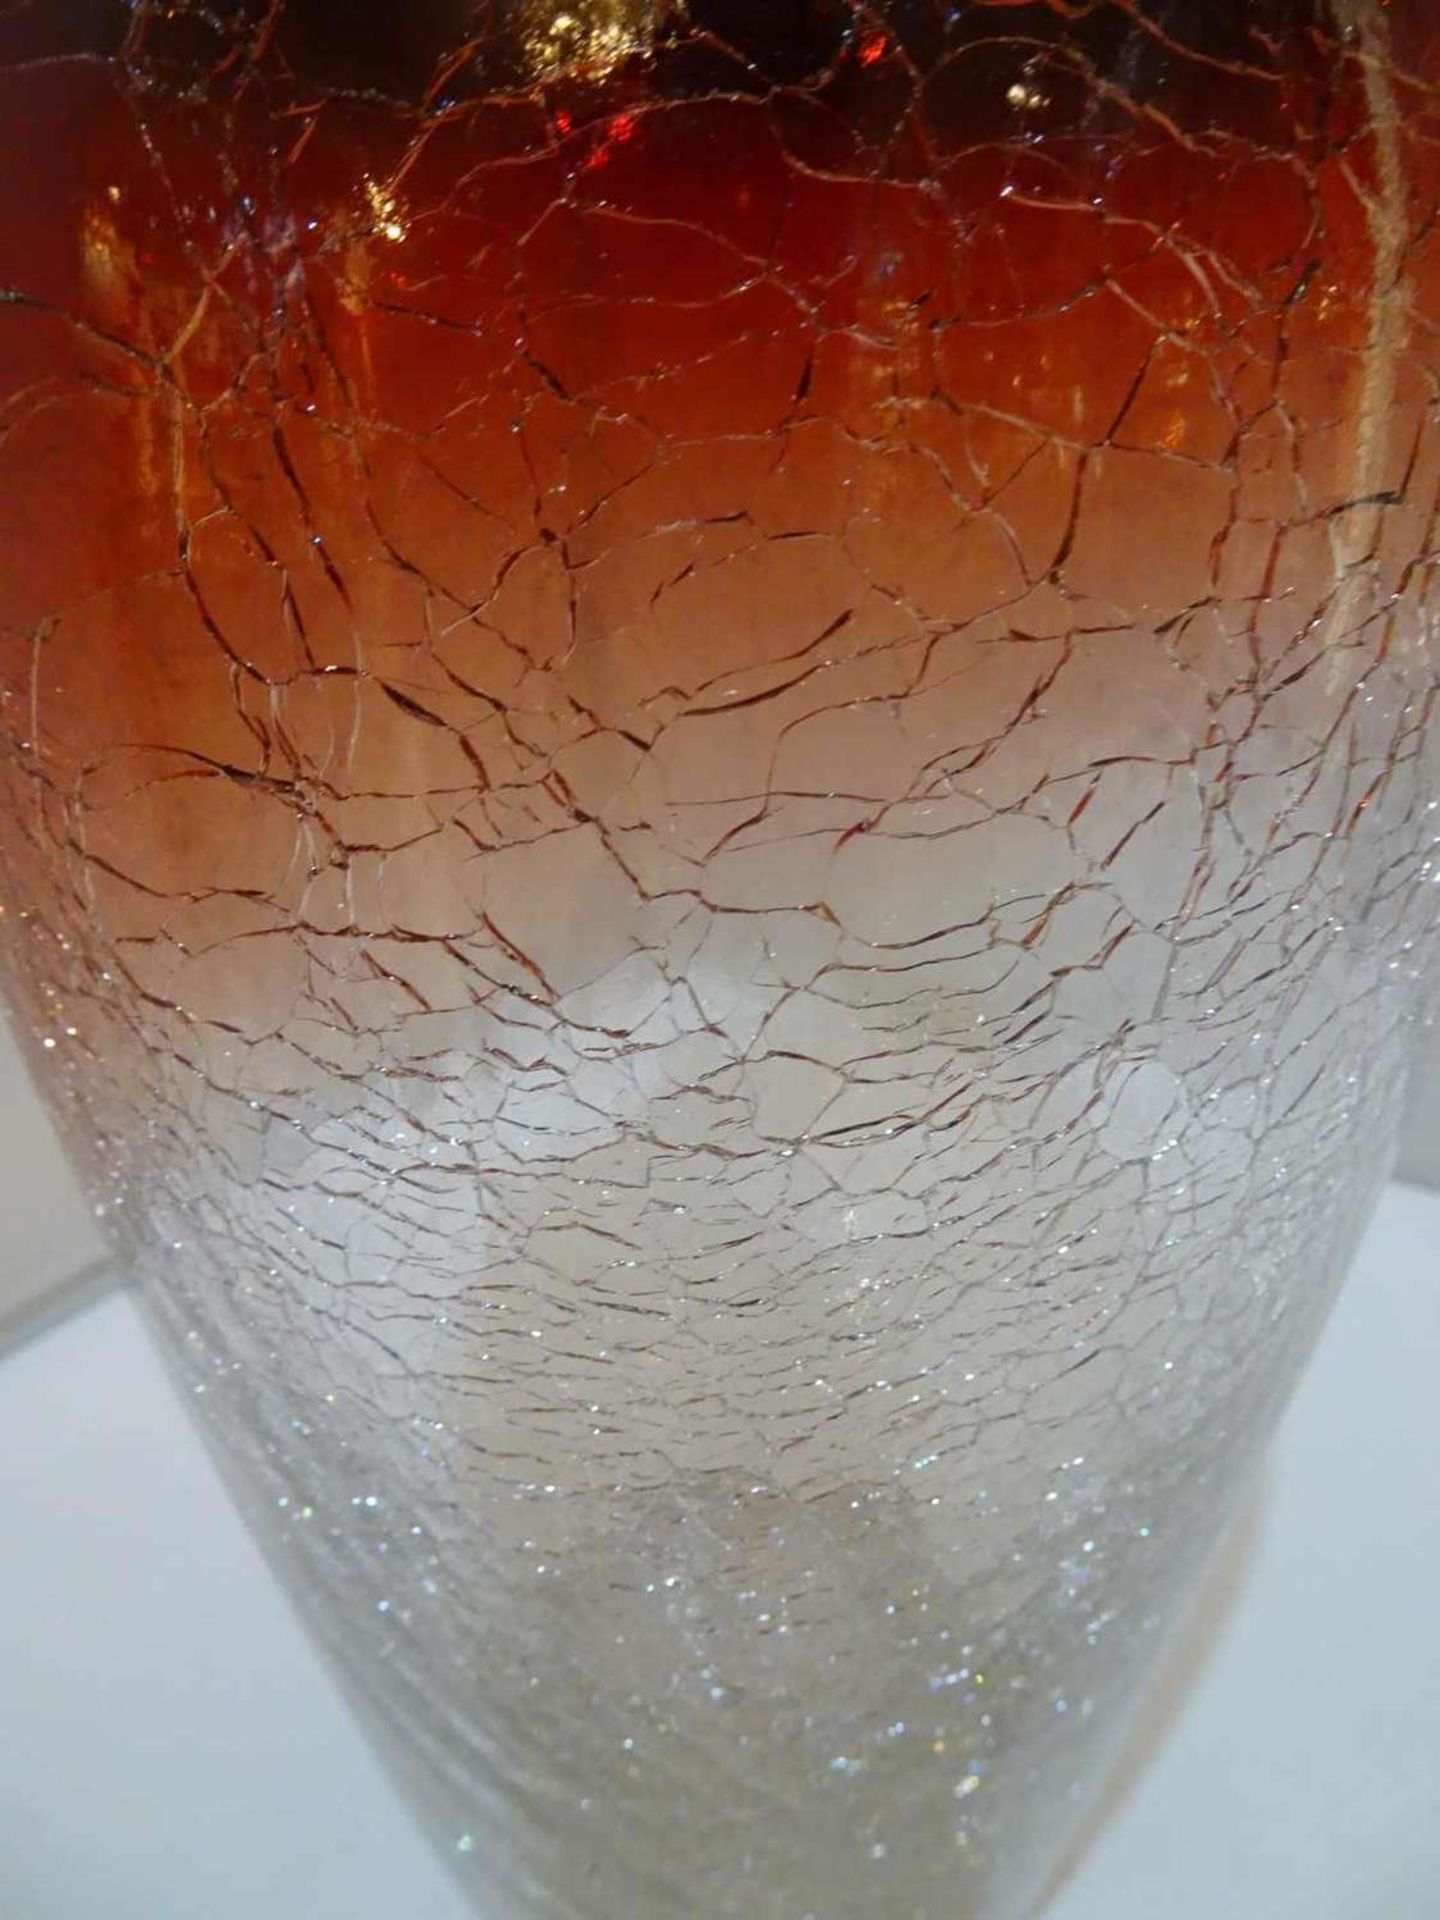 Eisglasvase, bay. Wald. Klarglas in rot überlaufend. Höhe ca. 29 cm. Topzustand. Ice glass vase, - Bild 2 aus 2